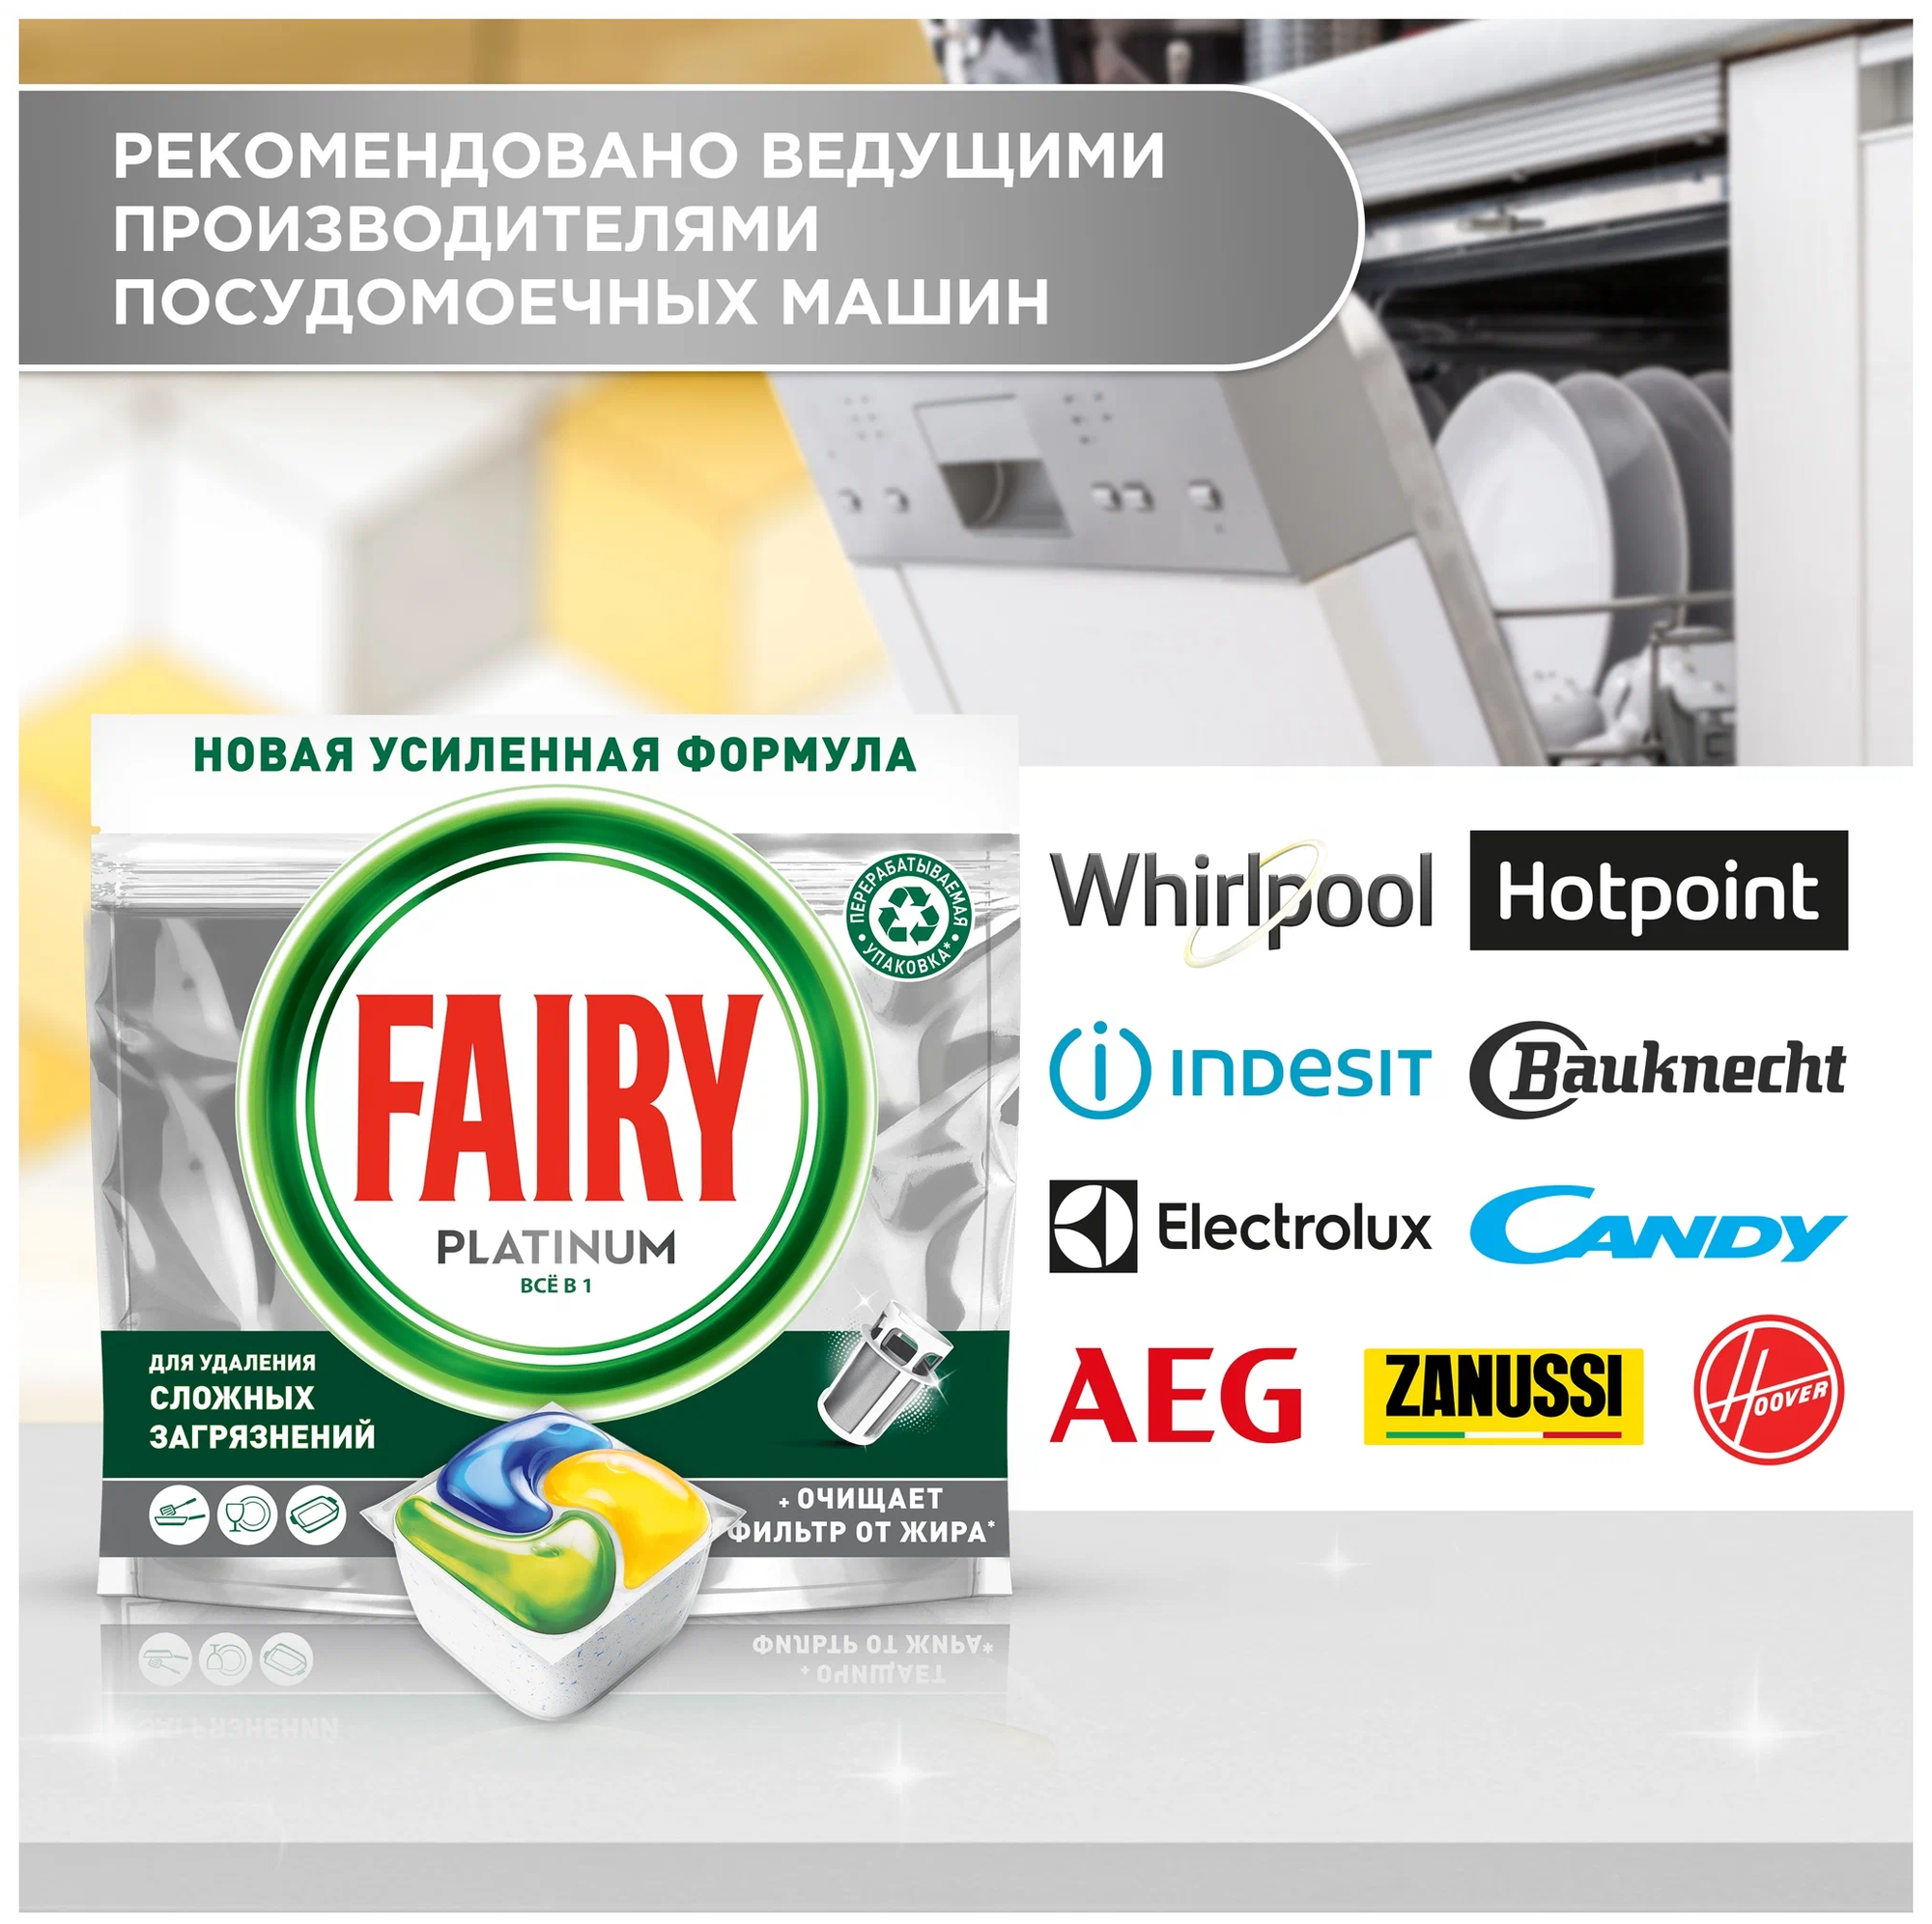 Моющее средство для посудомоечной машины Fairy - фото №9